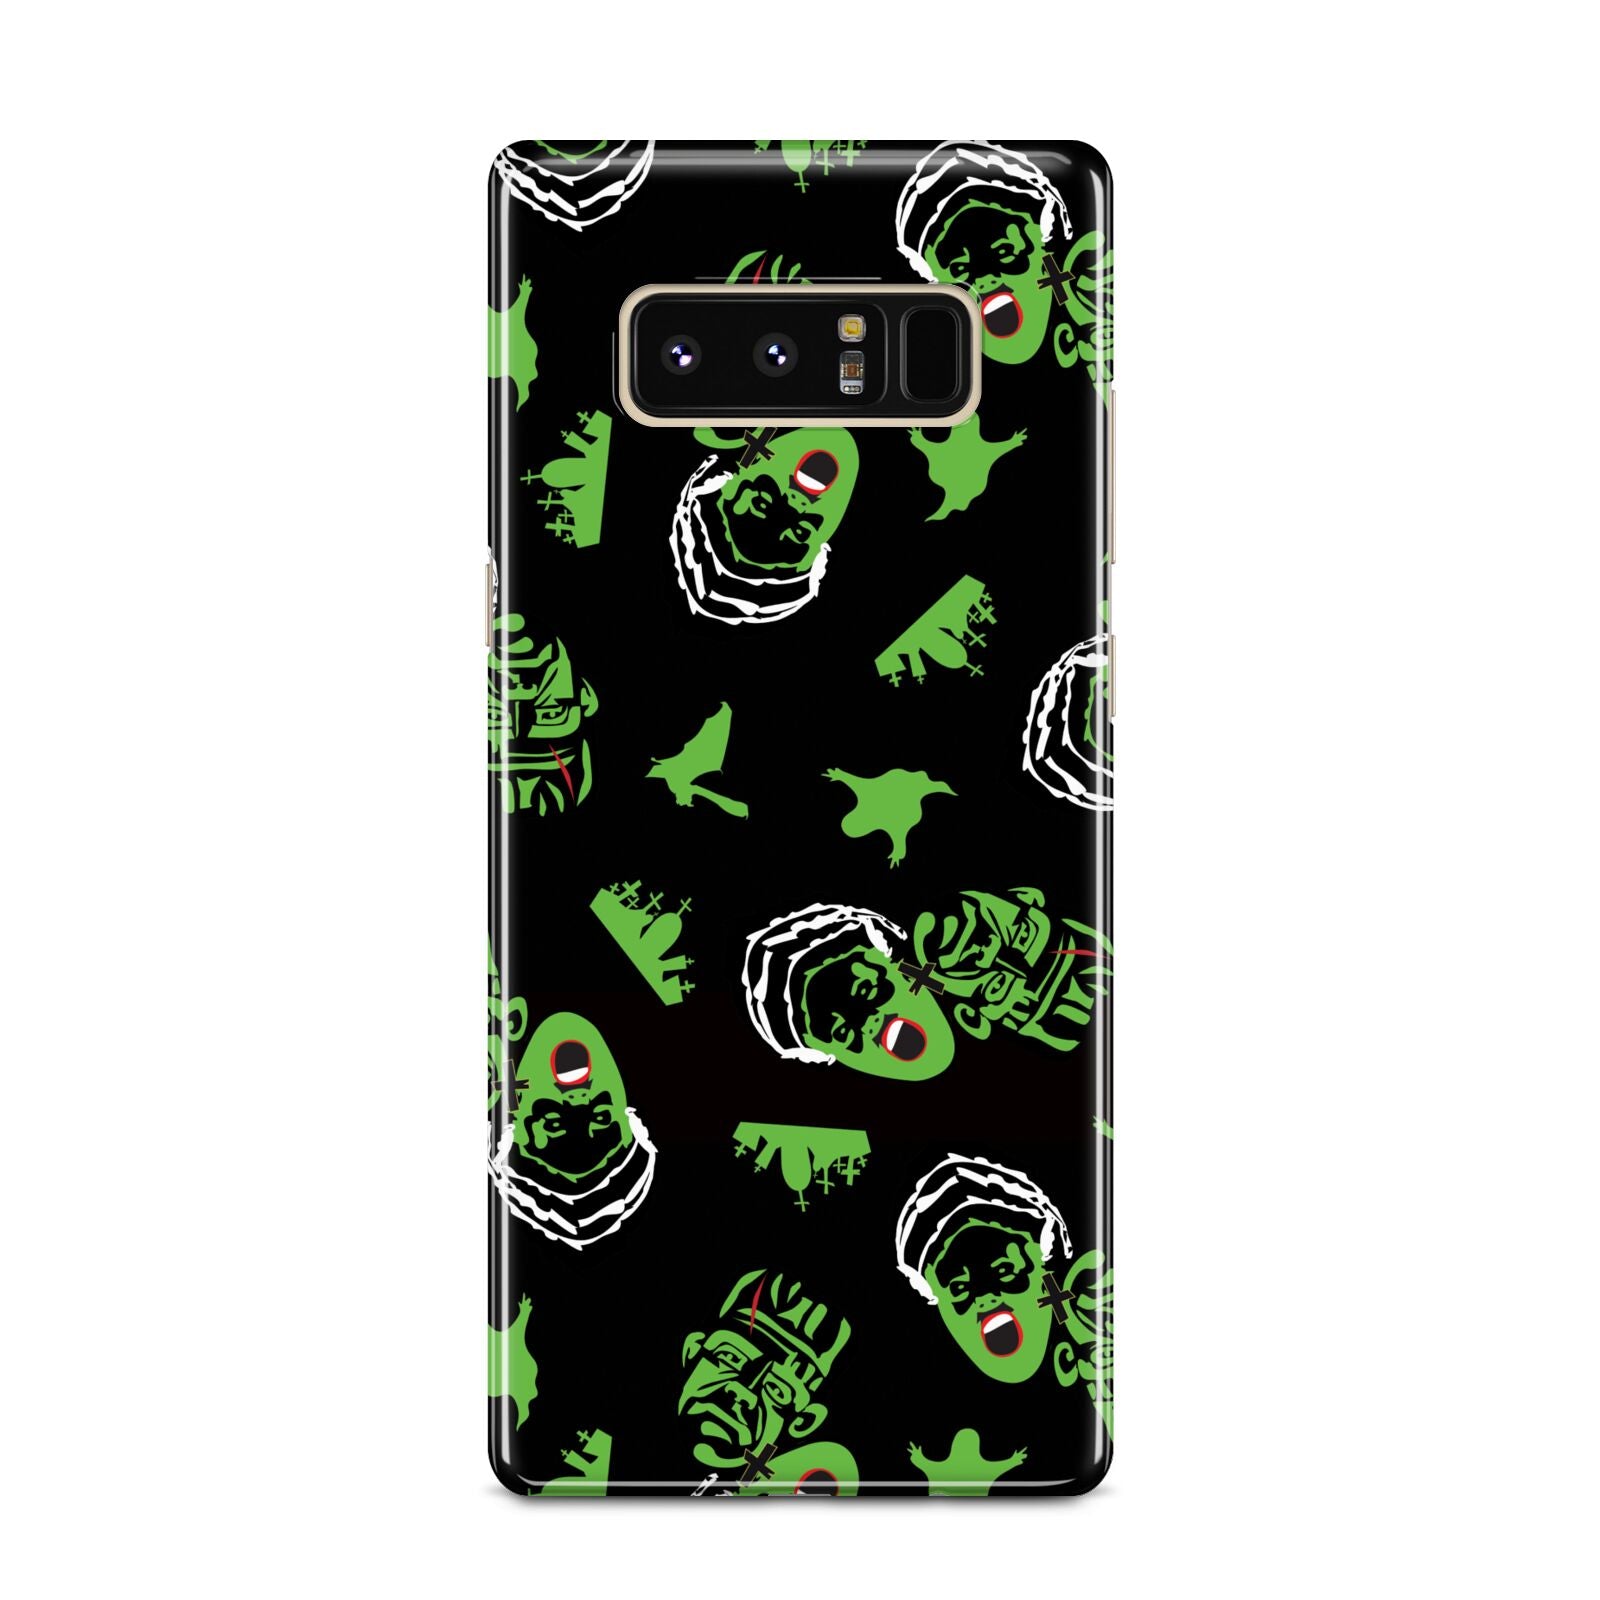 Movie Monster Samsung Galaxy Note 8 Case